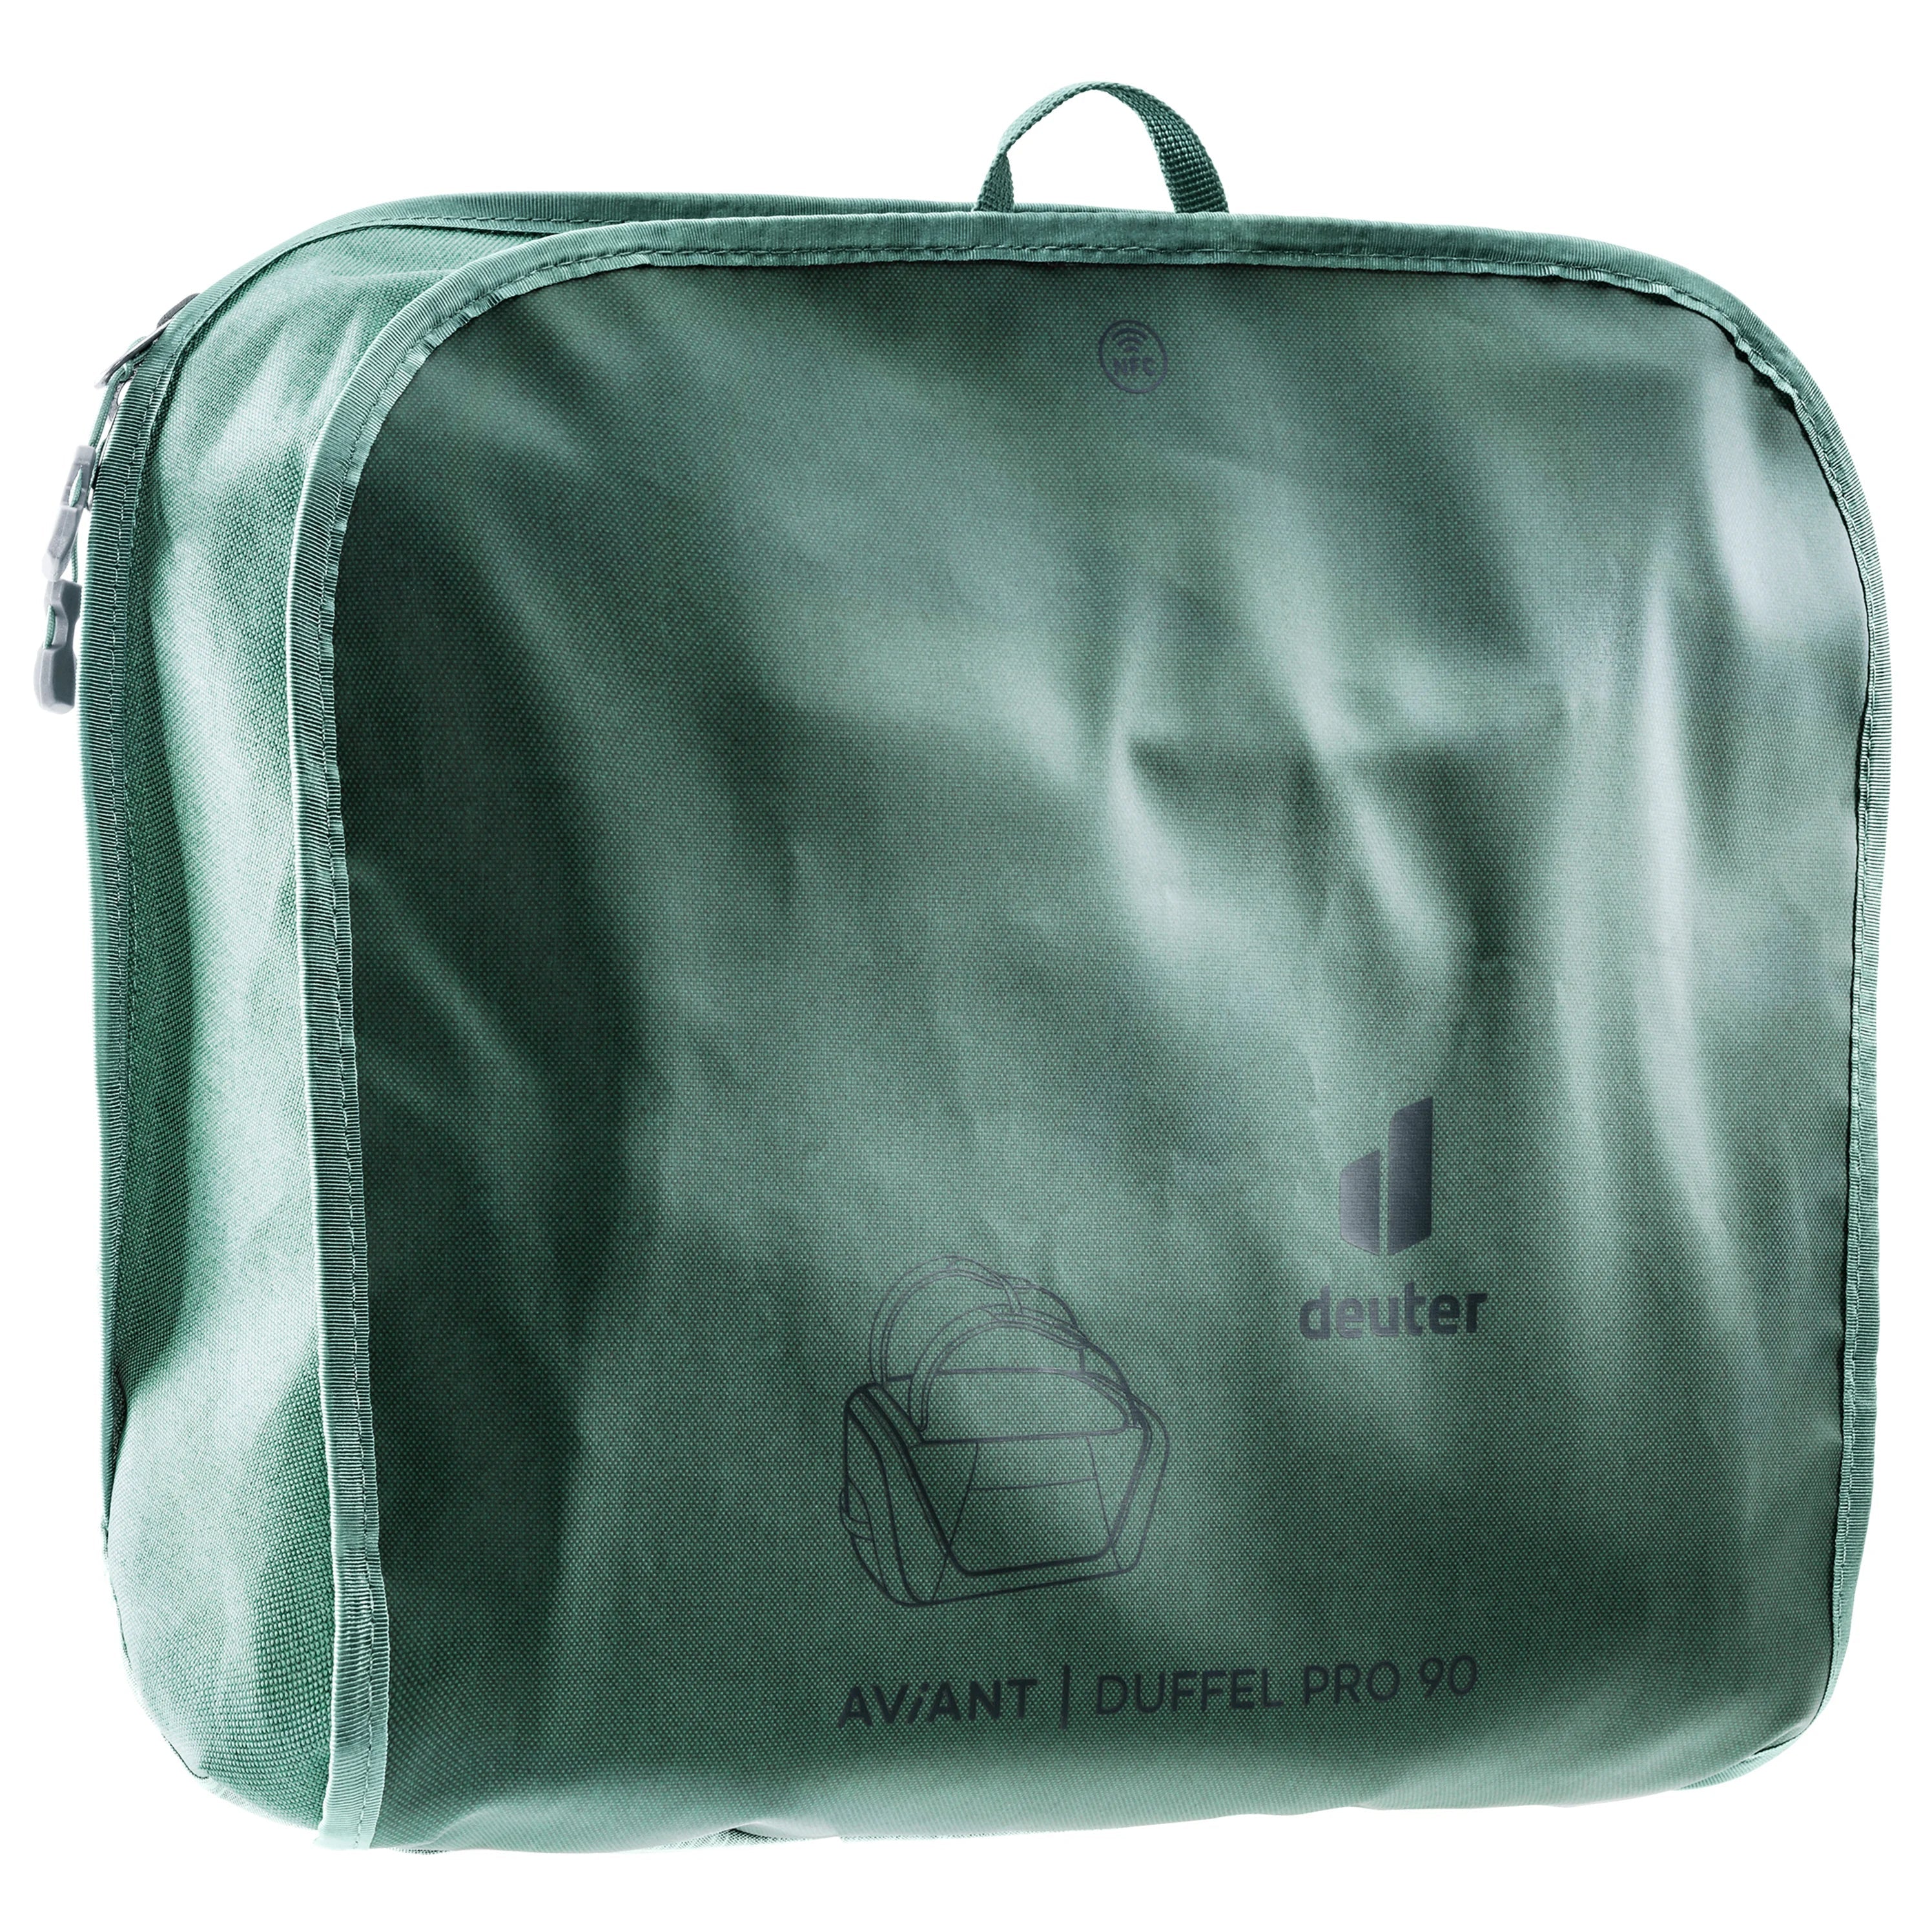 Deuter Travel Aviant Duffel Pro 90 Reisetasche 80 cm - jade-seagreen